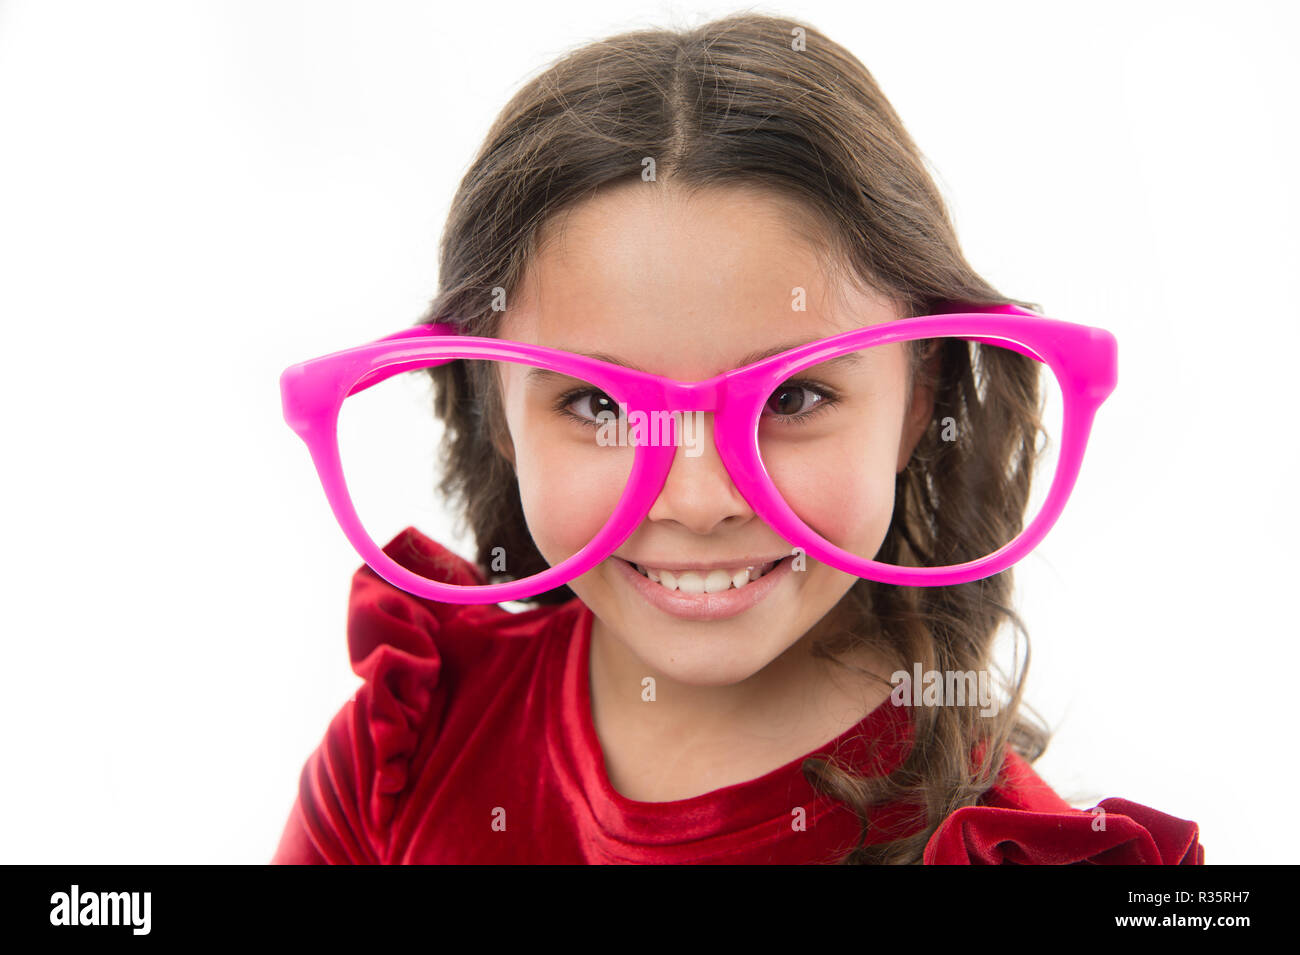 Kind glücklich tragen süße Brillen Zubehör. Kind charmantes Lächeln  isoliert weißer Hintergrund. Mädchen tragen große lustige Brillen für die  Partei. Kind niedlich Gesicht mit Brille. Wollen einfach nur Spaß zu haben  Stockfotografie -